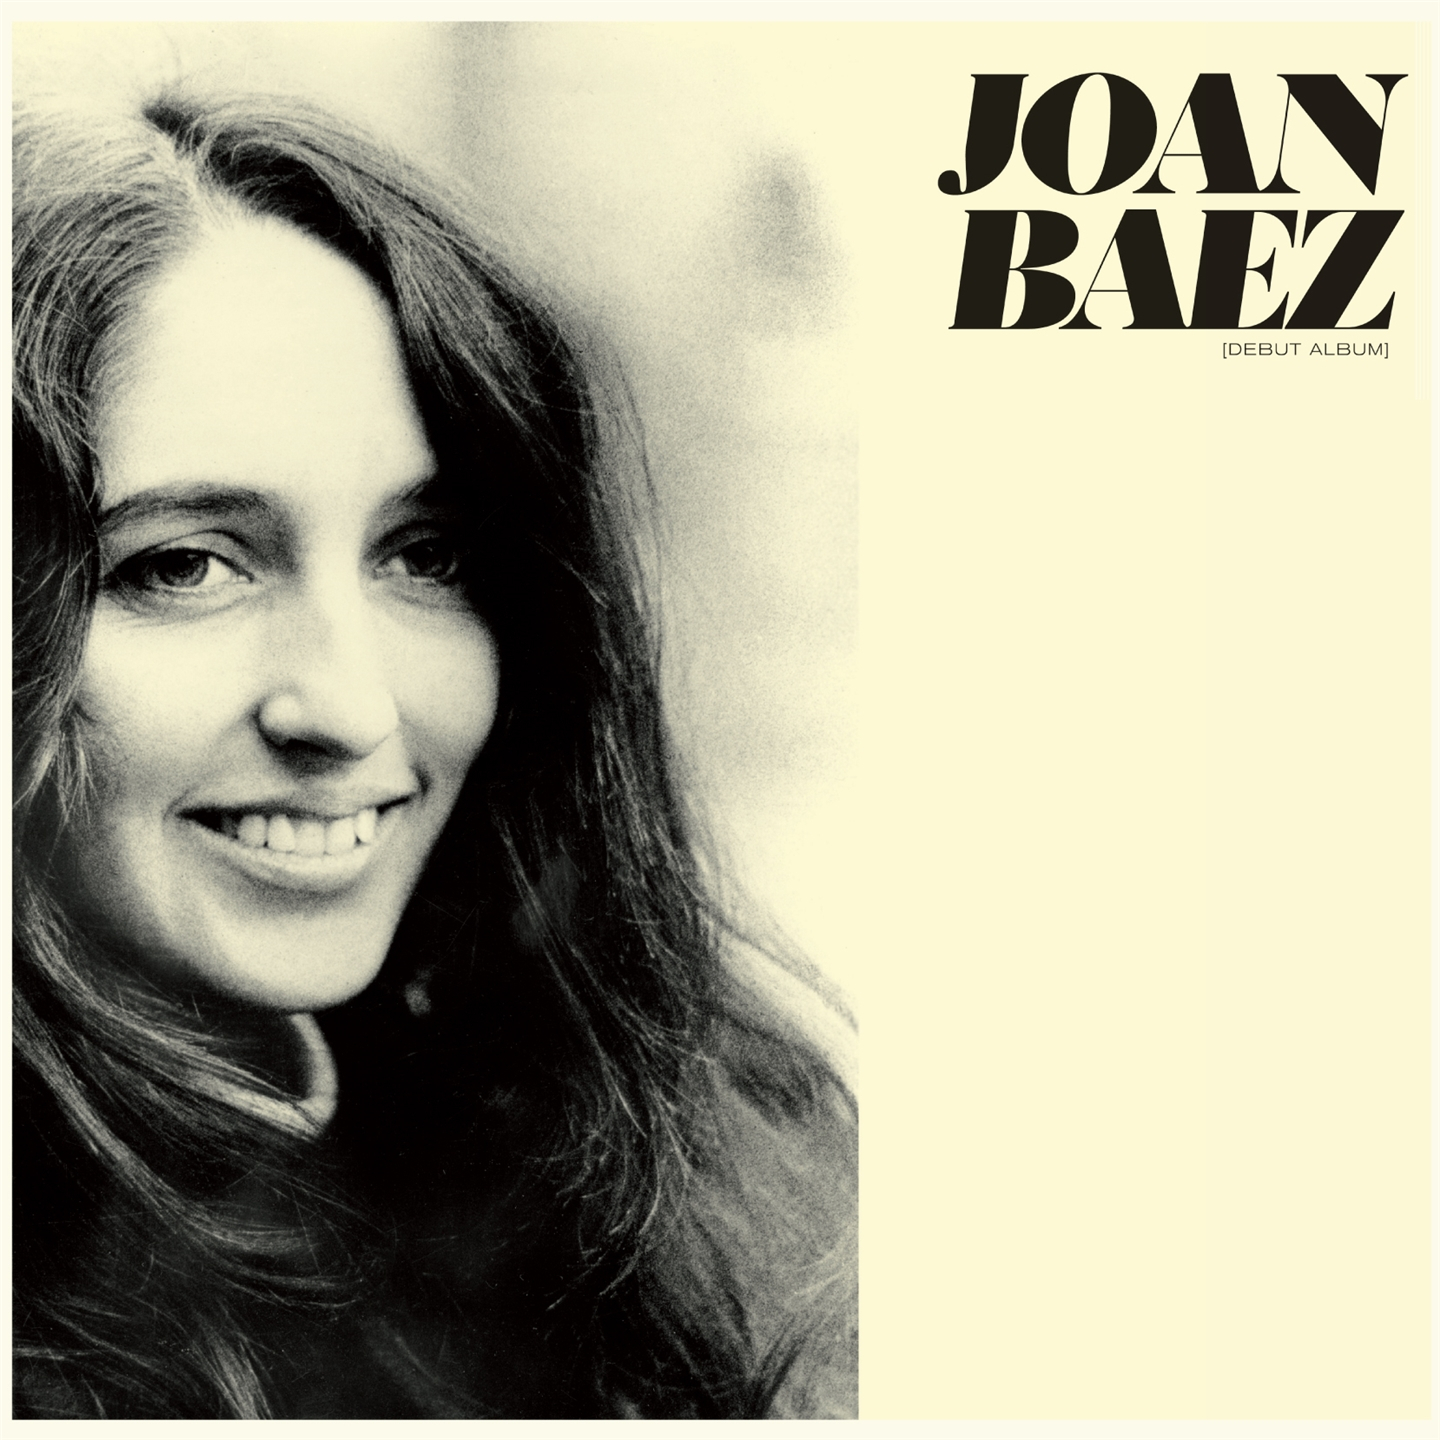 Baez Joan Debut Album Vinyl LP 180 grams Colorful NEW